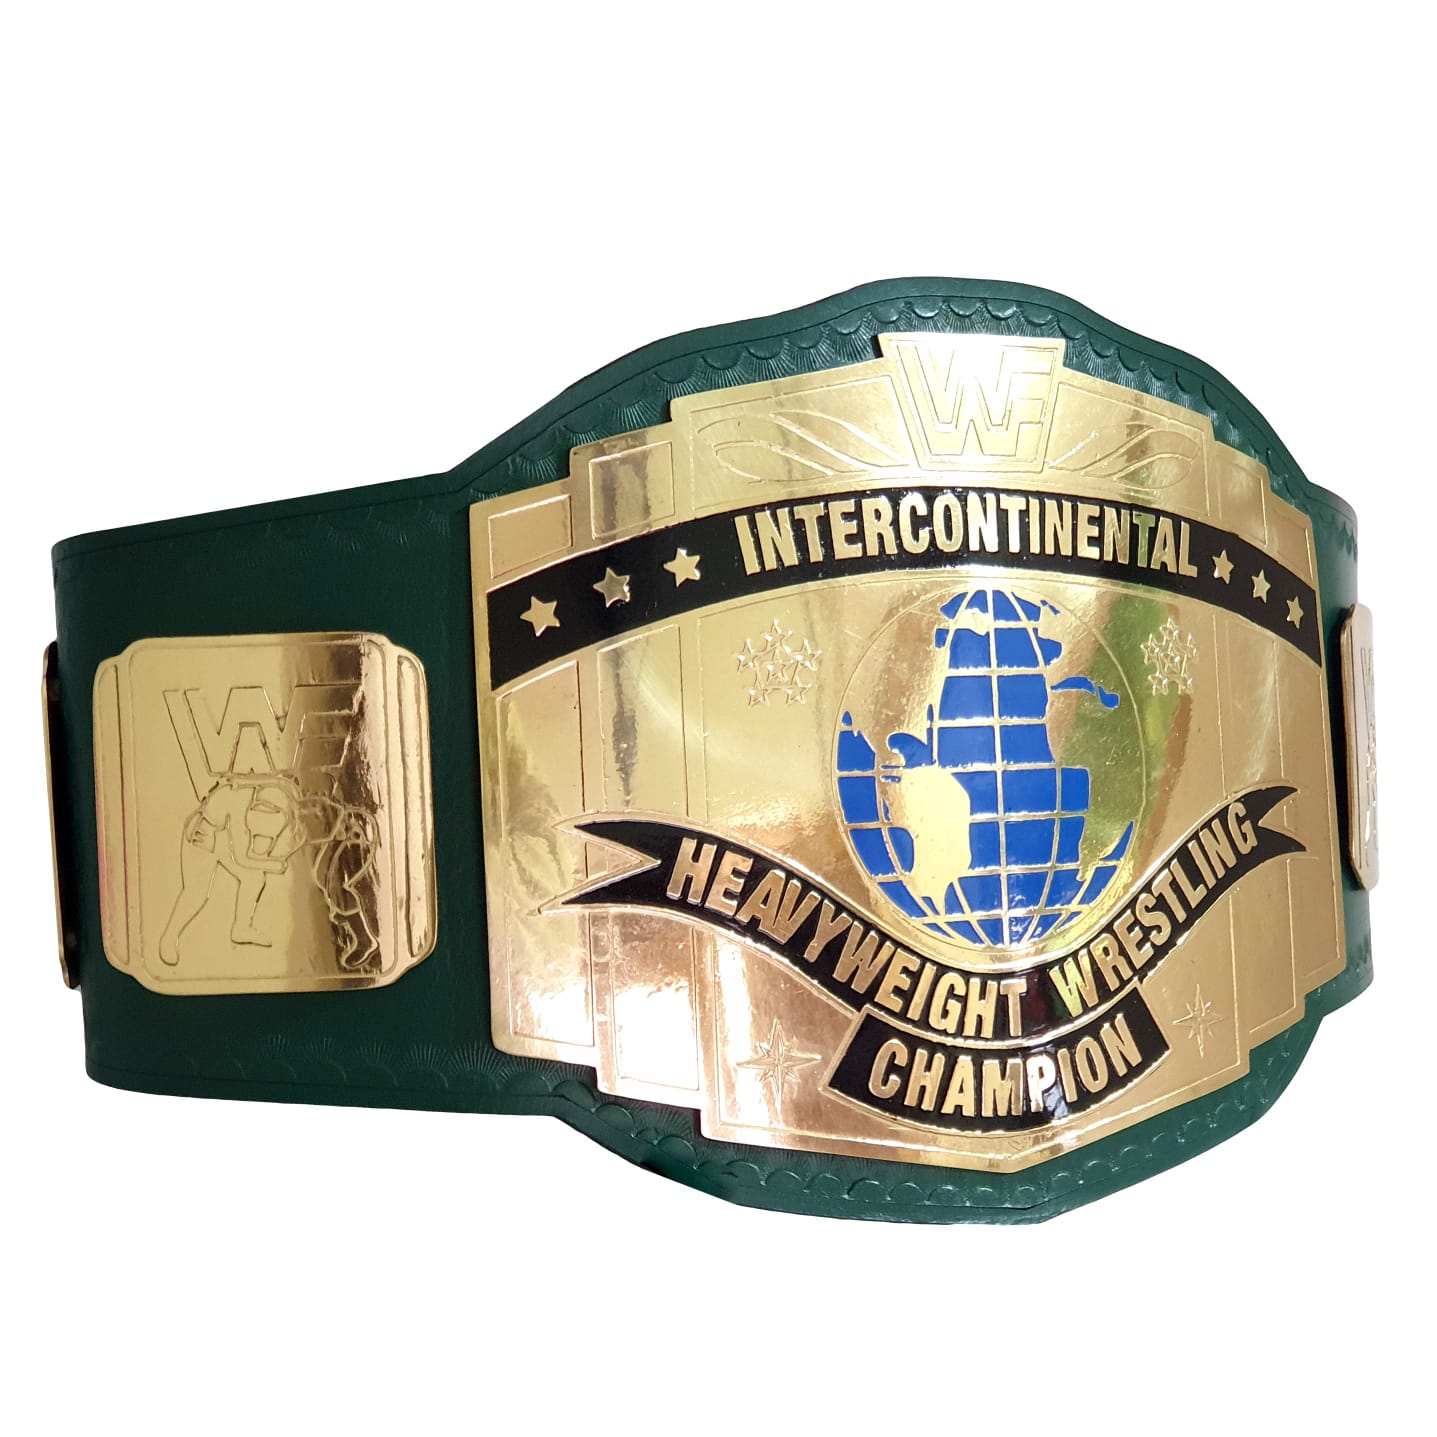 Ceinture de championnat de lutte intercontinentale poids lourd 2MM-0015